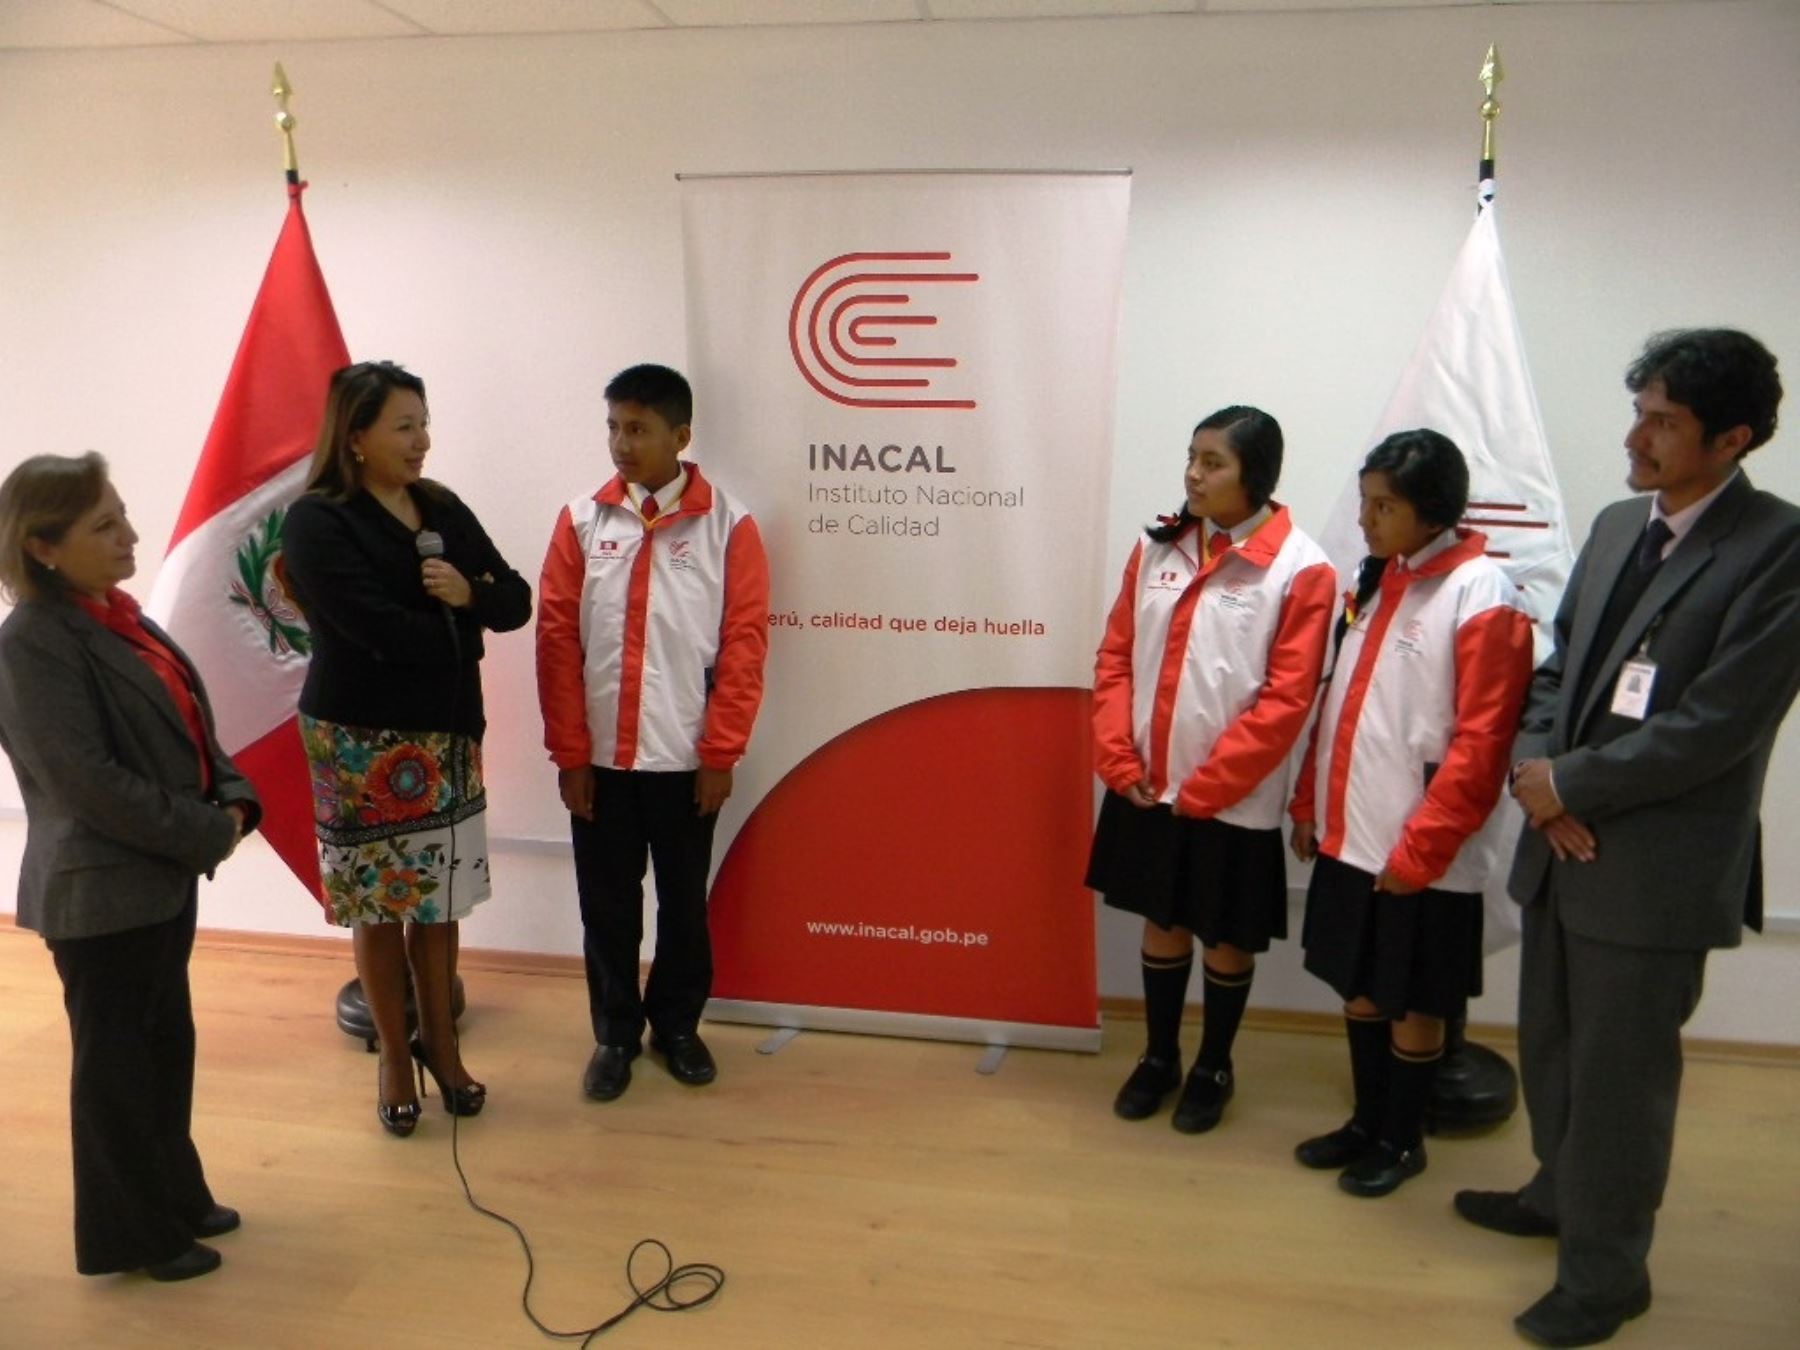 Estudiantes del COAR Cusco ganadores de medalla de oro en Olimpiada Internacional de Normalización, fueron capacitados en Inacal.